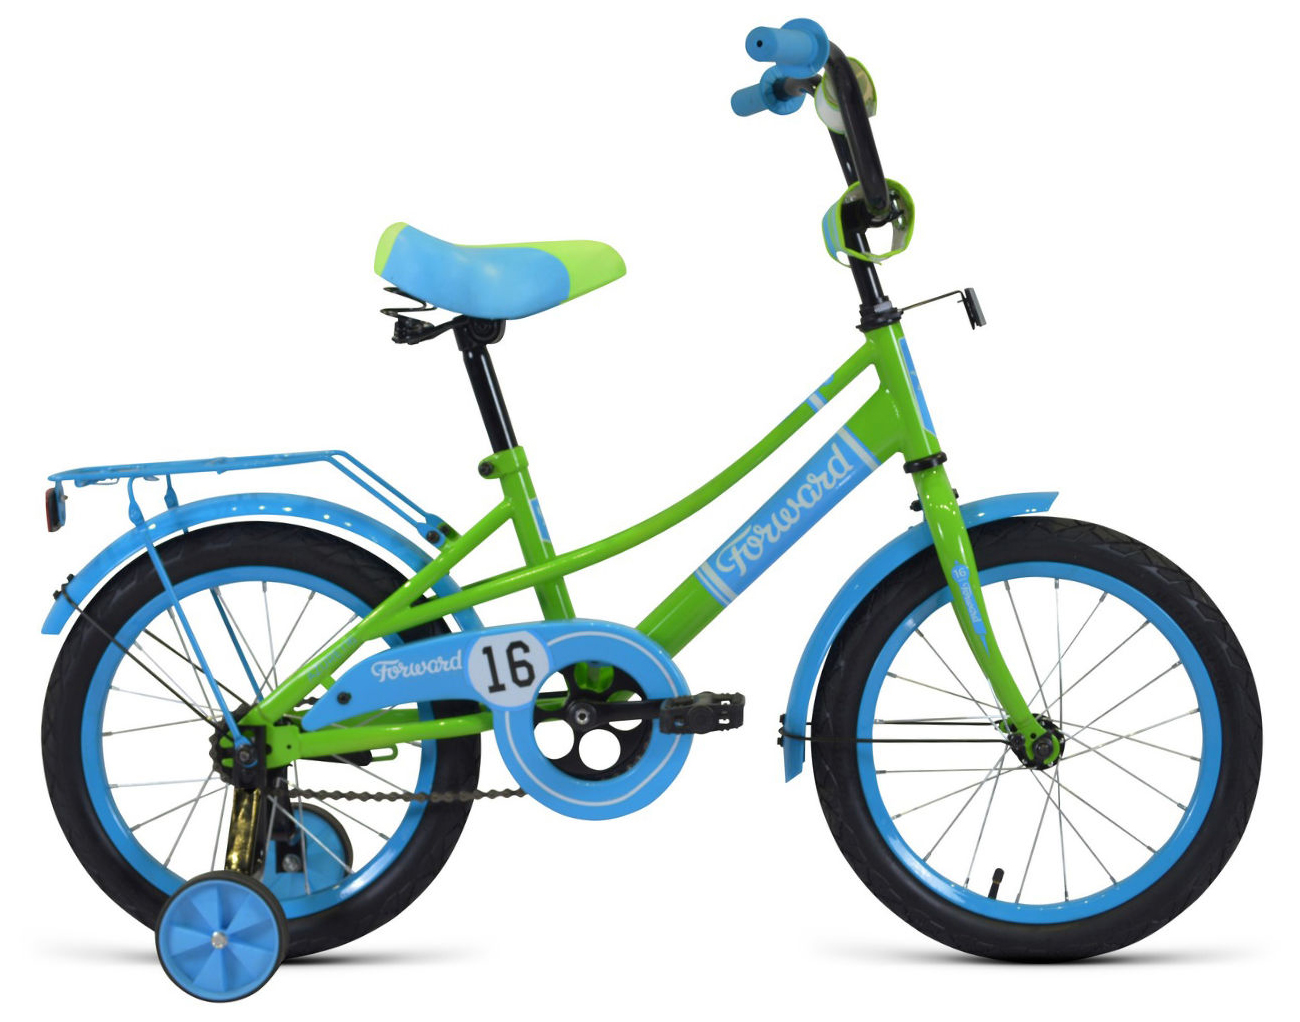  Отзывы о Детском велосипеде Forward Azure 16 2020